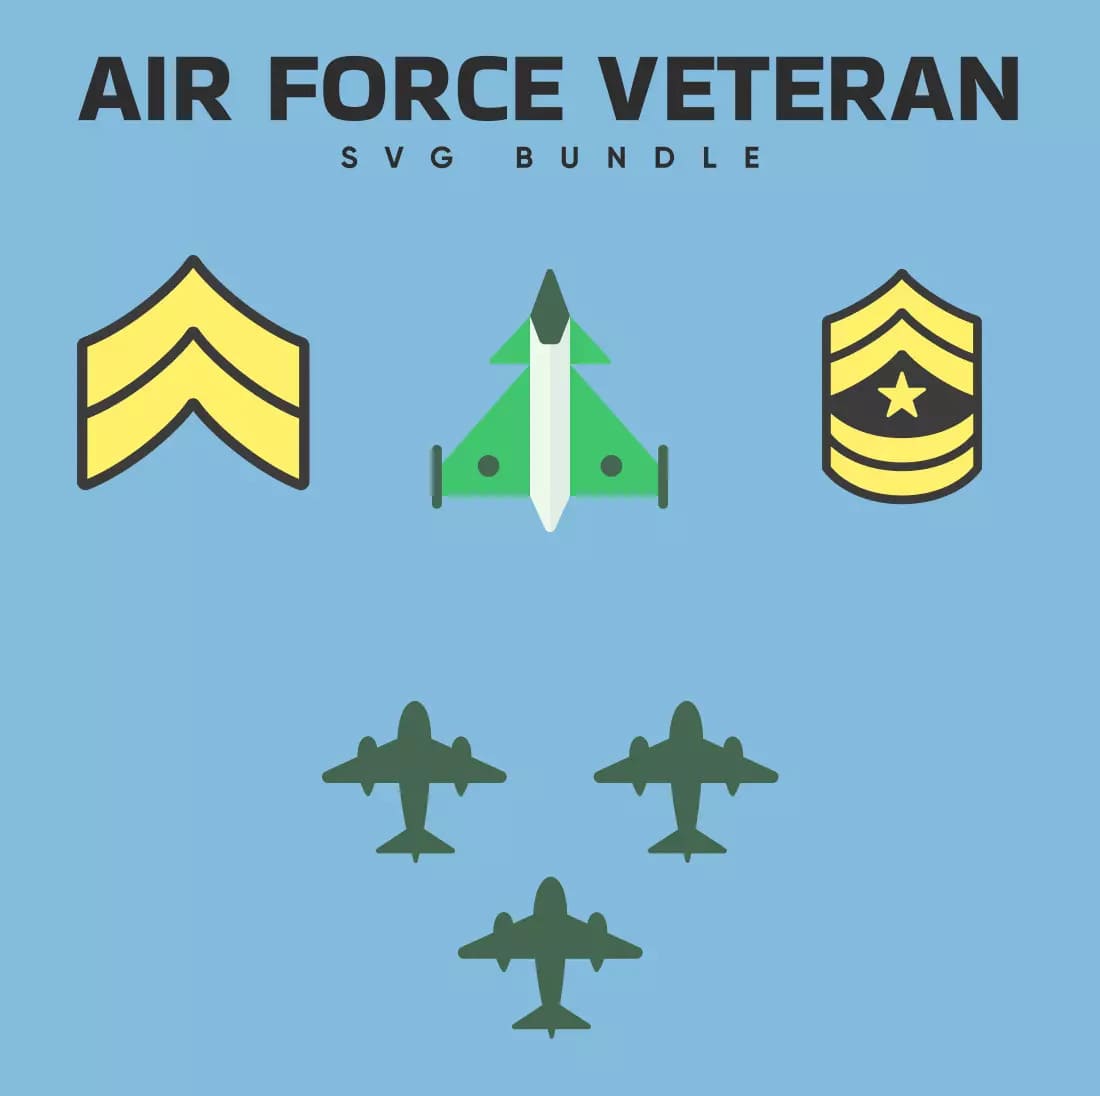 Air Force Veteran SVG Bundle Preview.